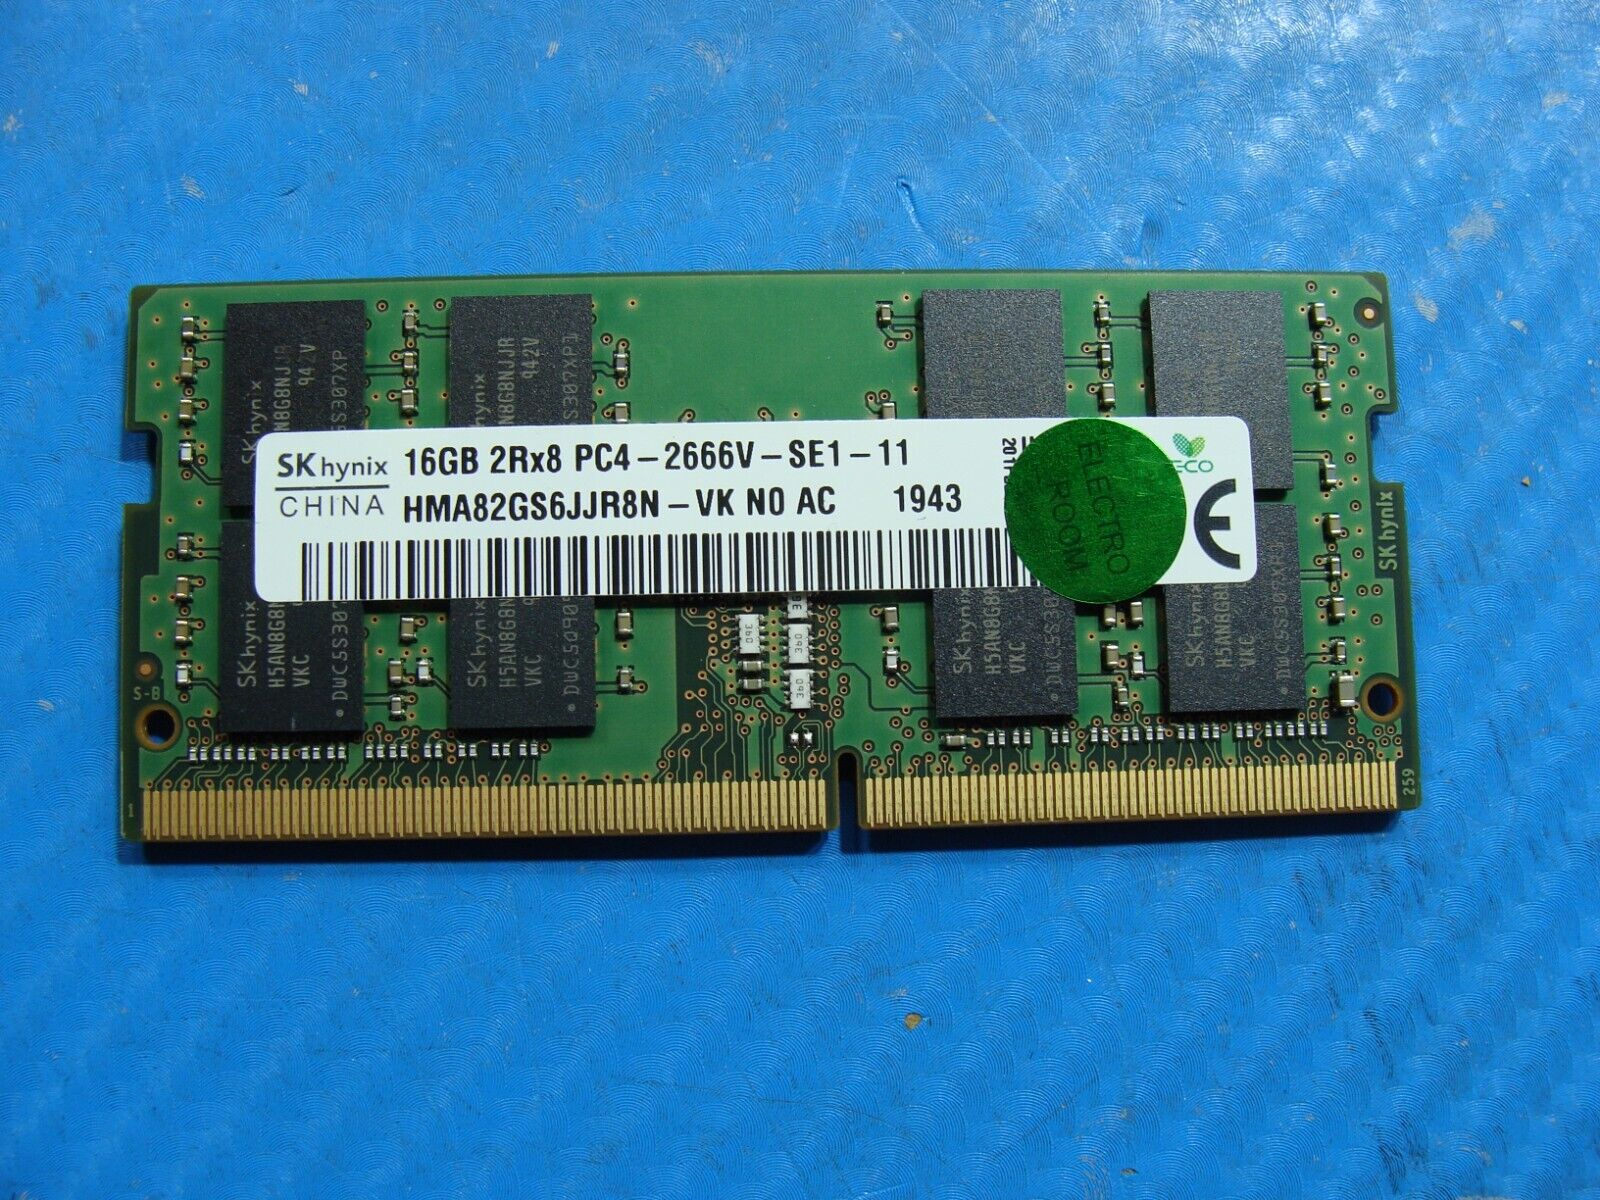 HP 15u G6 SK Hynix 16GB 2Rx8 PC4-2666V SO-DIMM Memory RAM HMA82GS6JJR8N-VK